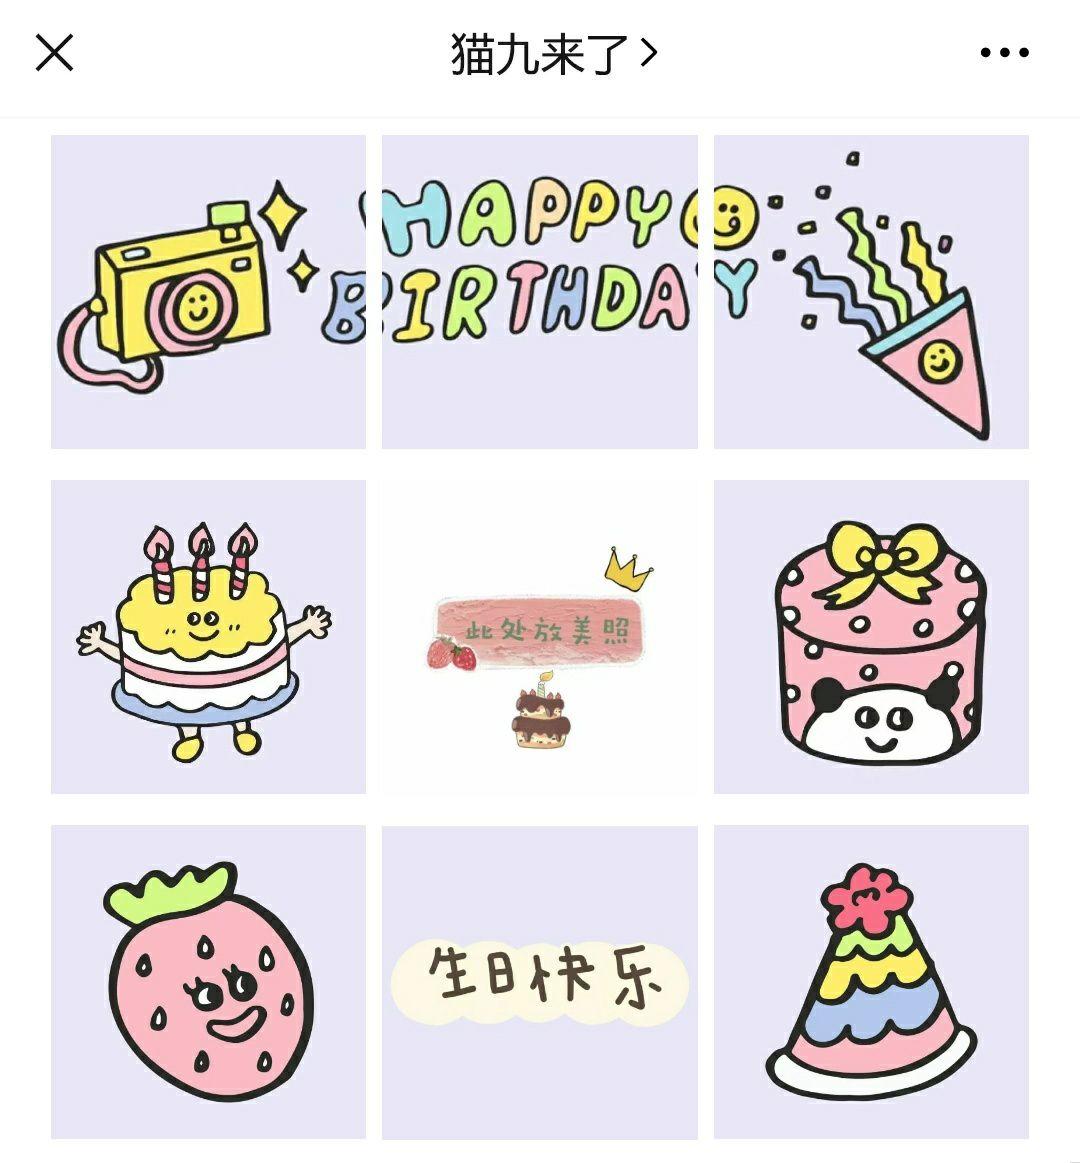 老公生日蛋糕图片-图库-五毛网